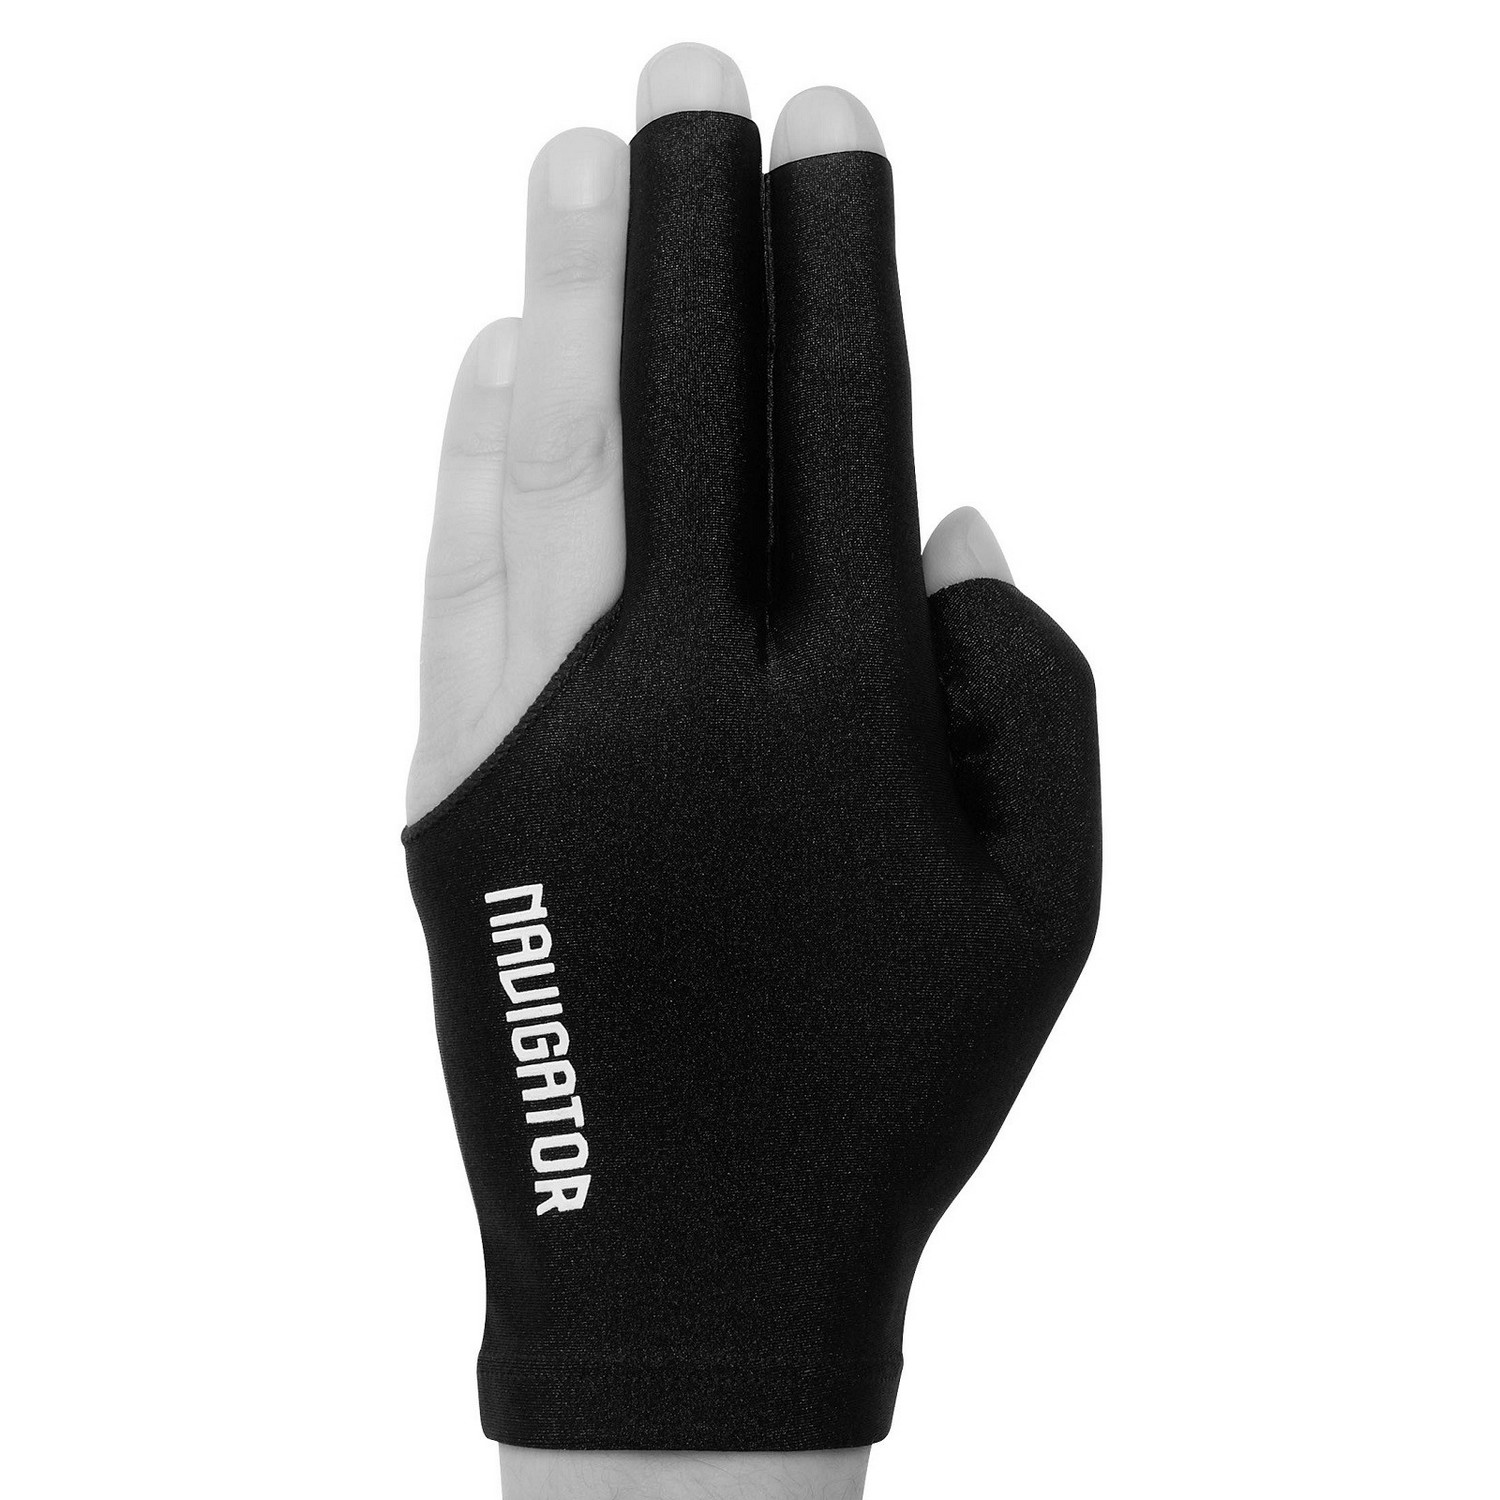 Купить Перчатка для бильярда Navigator Glove Open черная левая 1шт.,